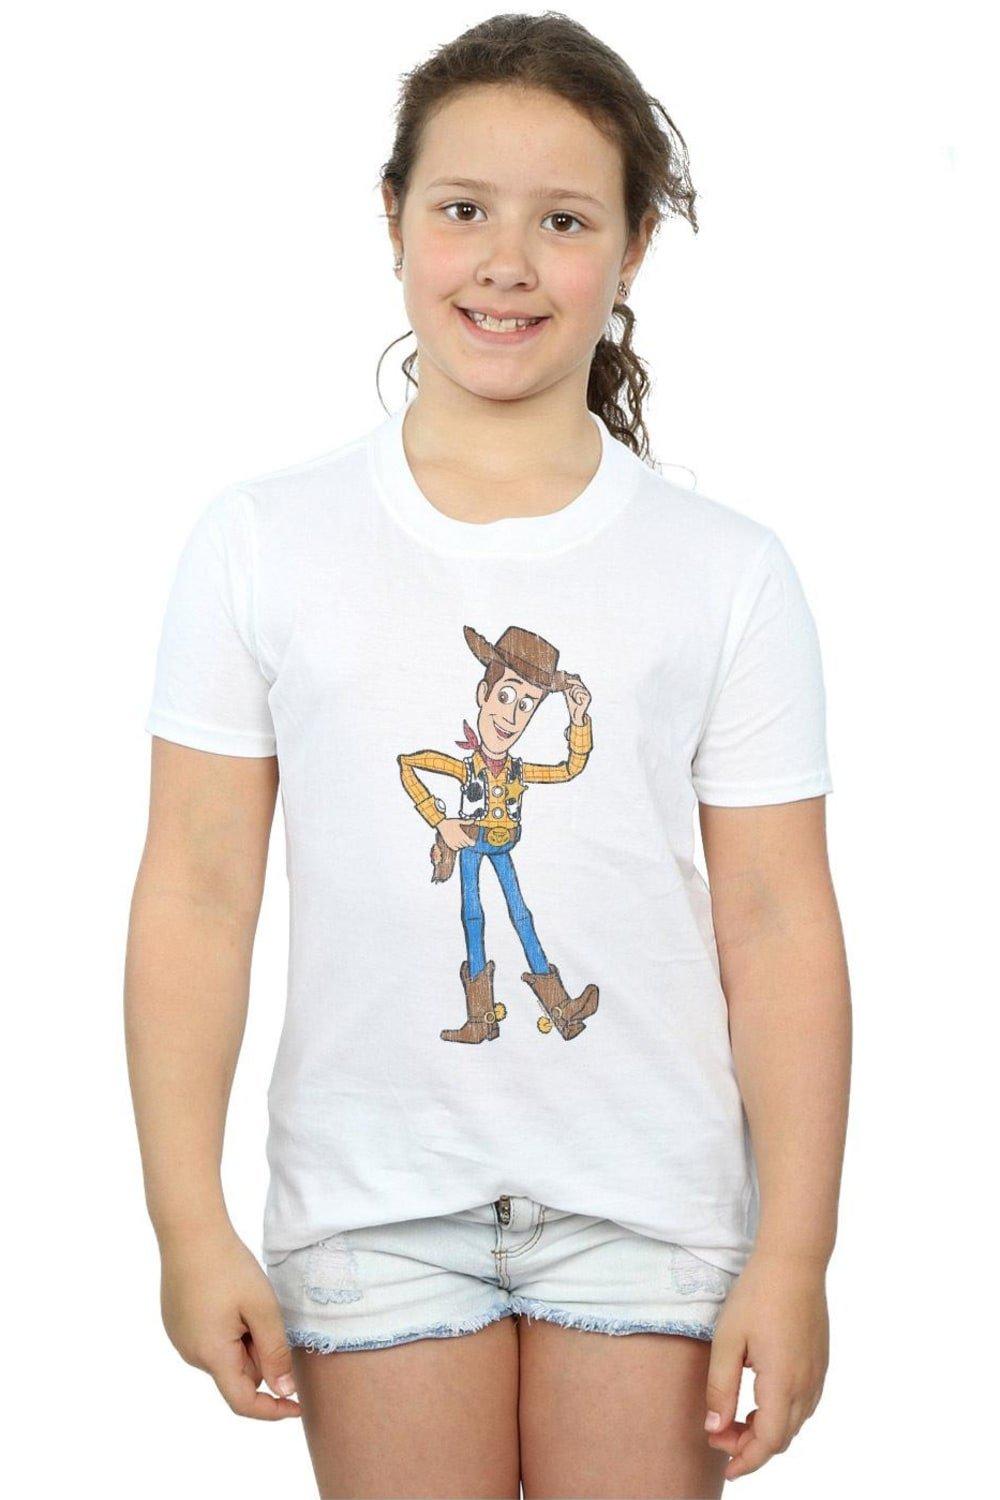 Хлопковая футболка «История игрушек 4: Шериф Вуди» Disney, белый